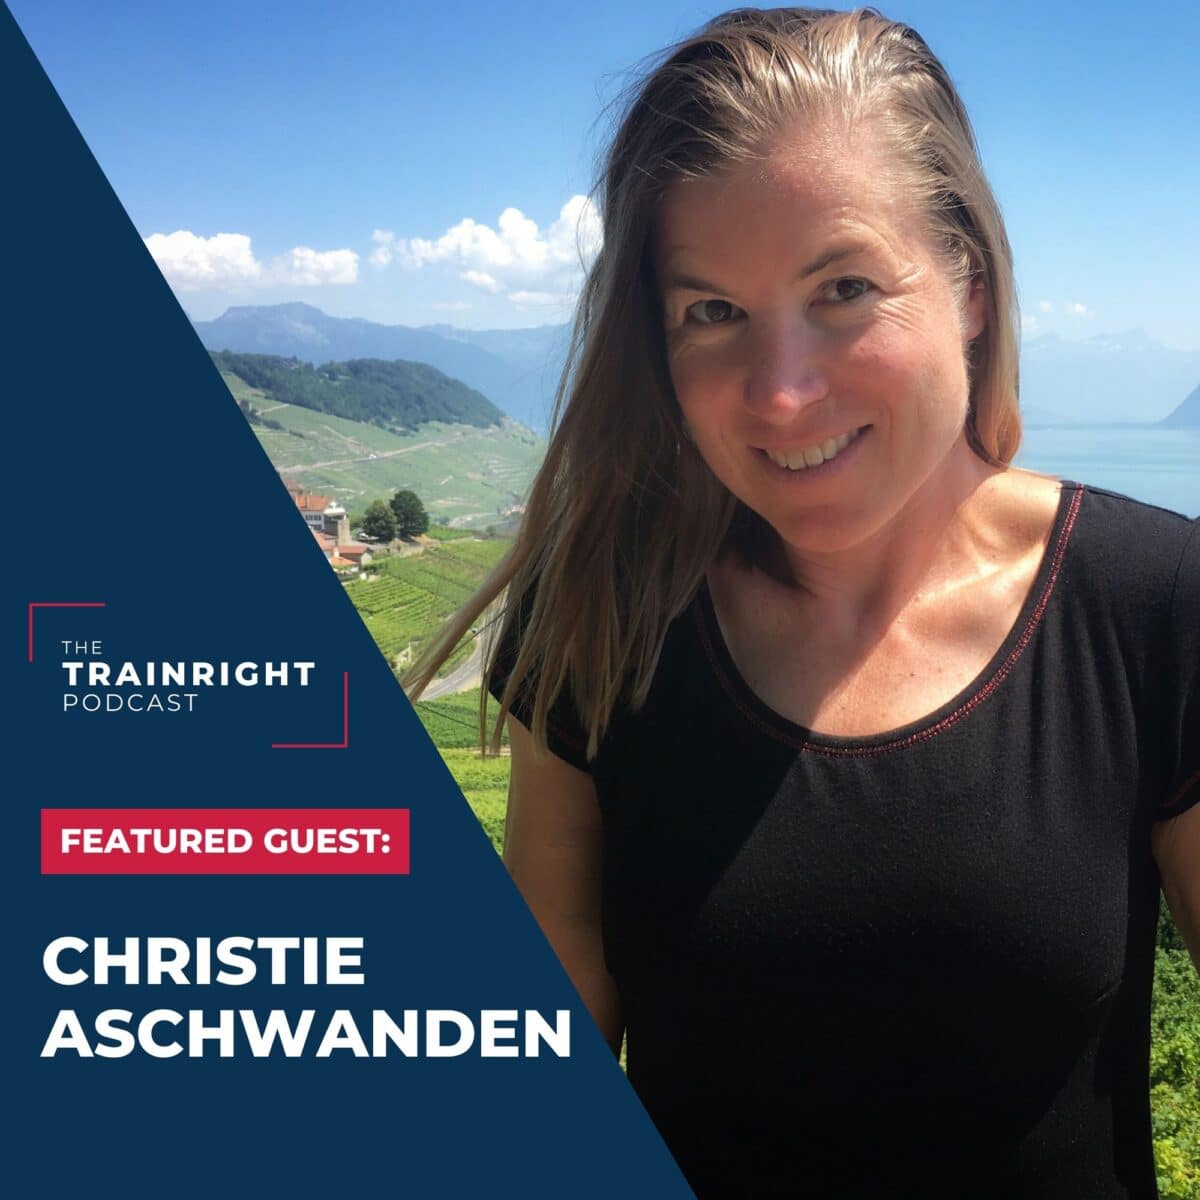 Christie Aschwanden